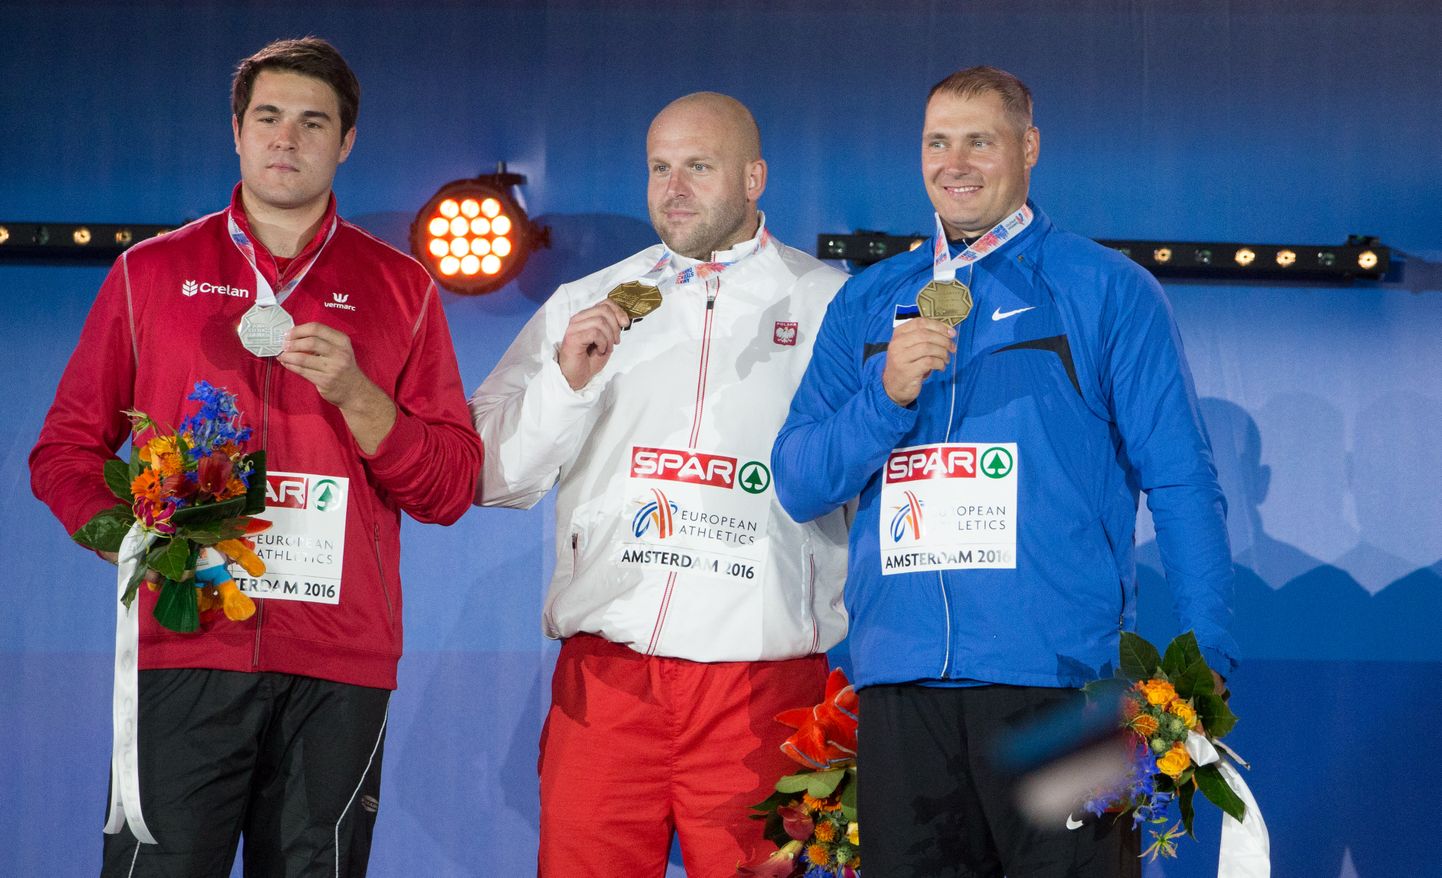 Olümpiavõitja Gerd Kanter (paremal) ja kahekordne olümpiahõbe Piotr Malachowski (keskel) on mitmel korral tiitlivõistlustel koos poodiumile tõusnud. Mullu karjääri lõpetanud Kanter töötab nüüd Malachowski treenerina ning mõistagi on eesmärgiks tõusta järgmisel aastal Tokyos olümpiavõitjaks.